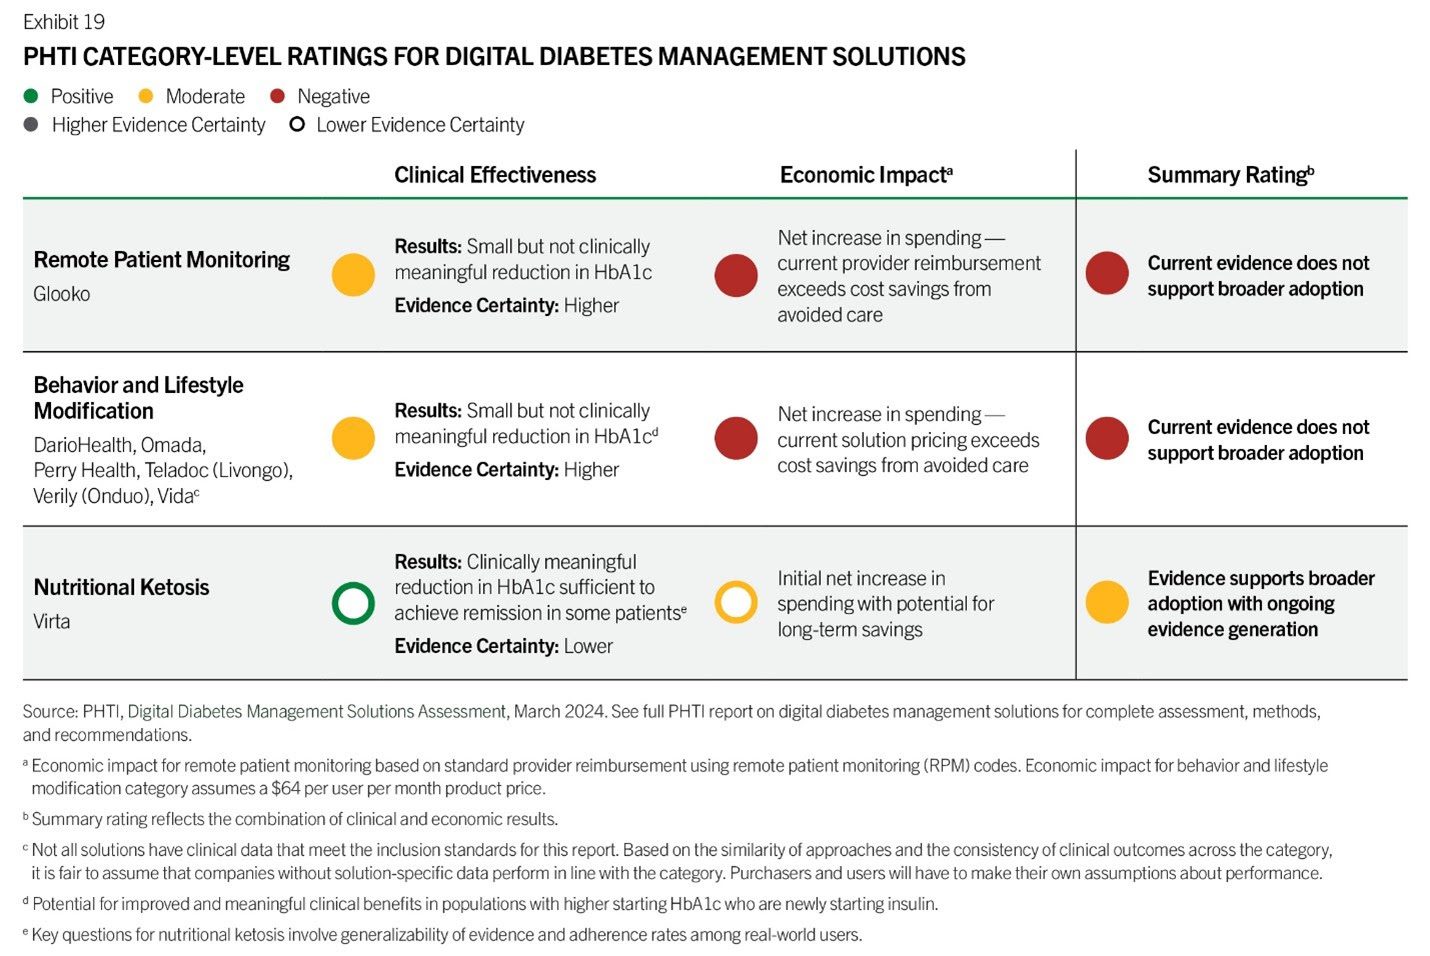 Digital Diabetes Management Tools Fail to Deliver Benefits - Report